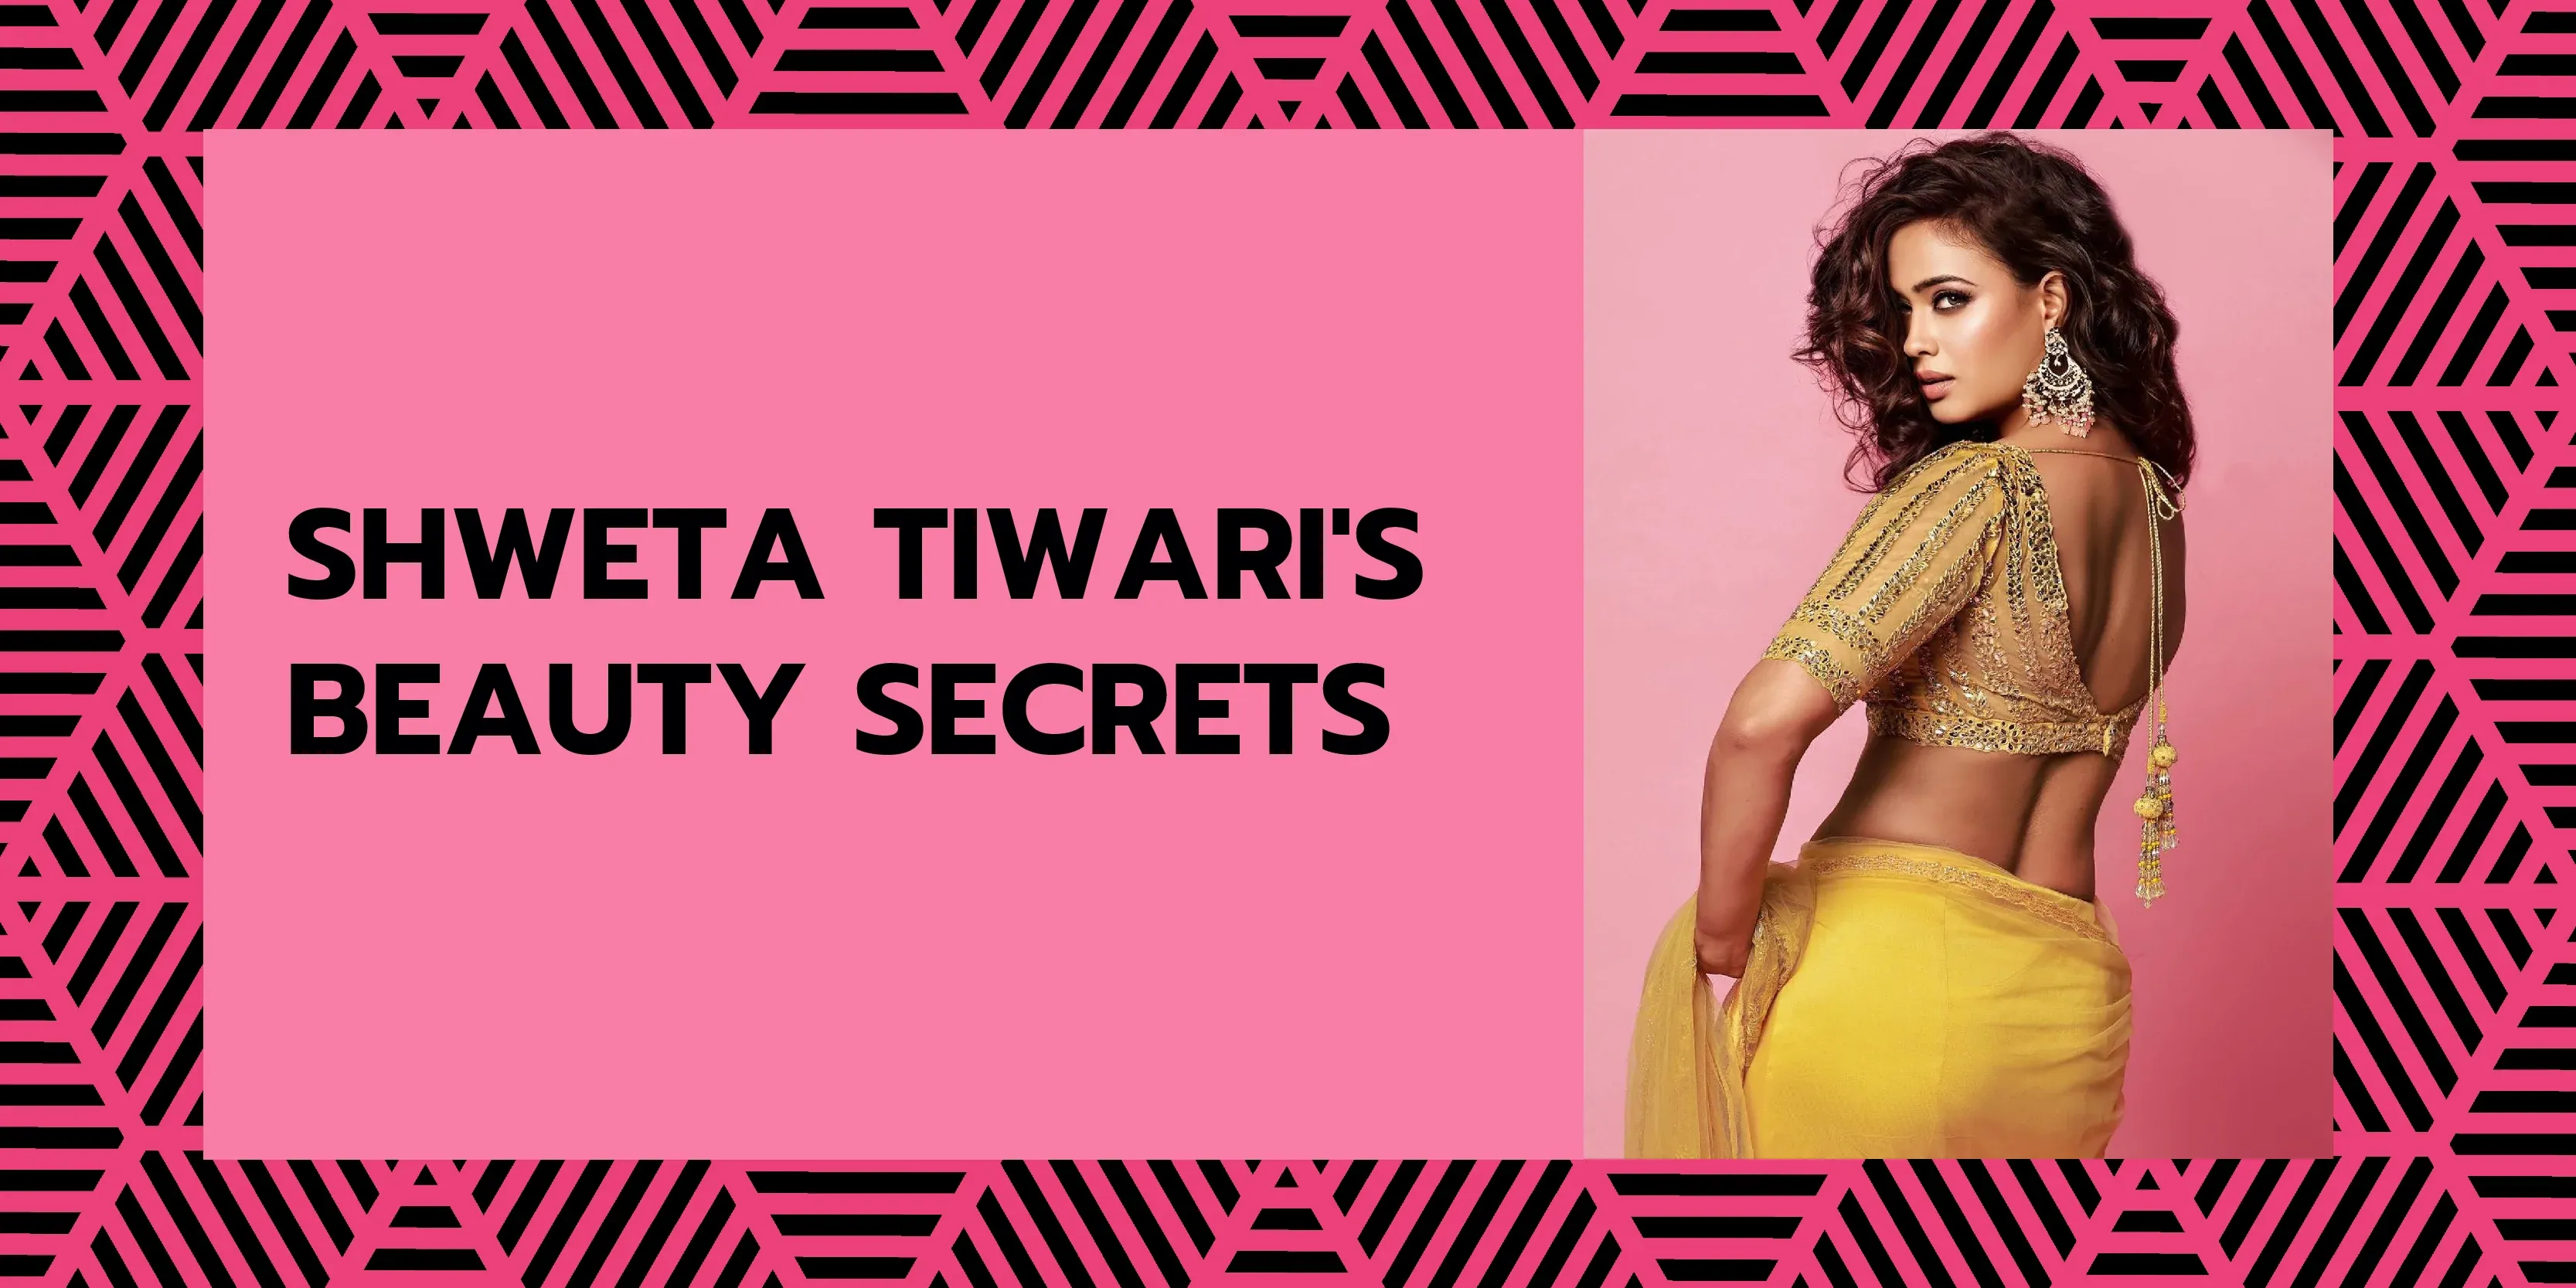 Shweta Tiwari's Beauty Secrets